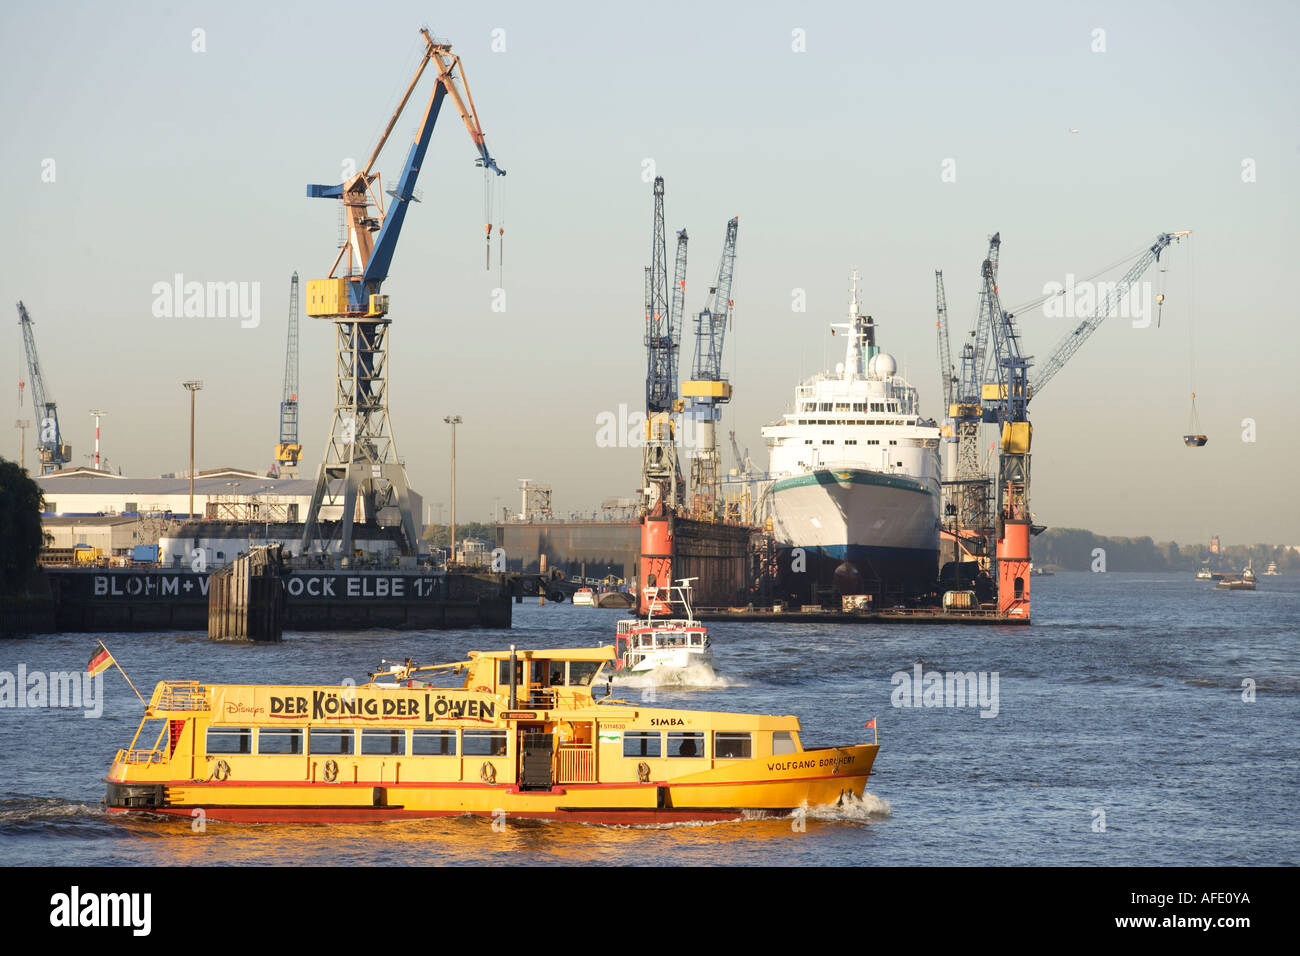 Nave da crociera MS Albatros, cantiere navale Blohm e Voss, chiatta sul fiume Elba, Porto, porto di Amburgo Foto Stock